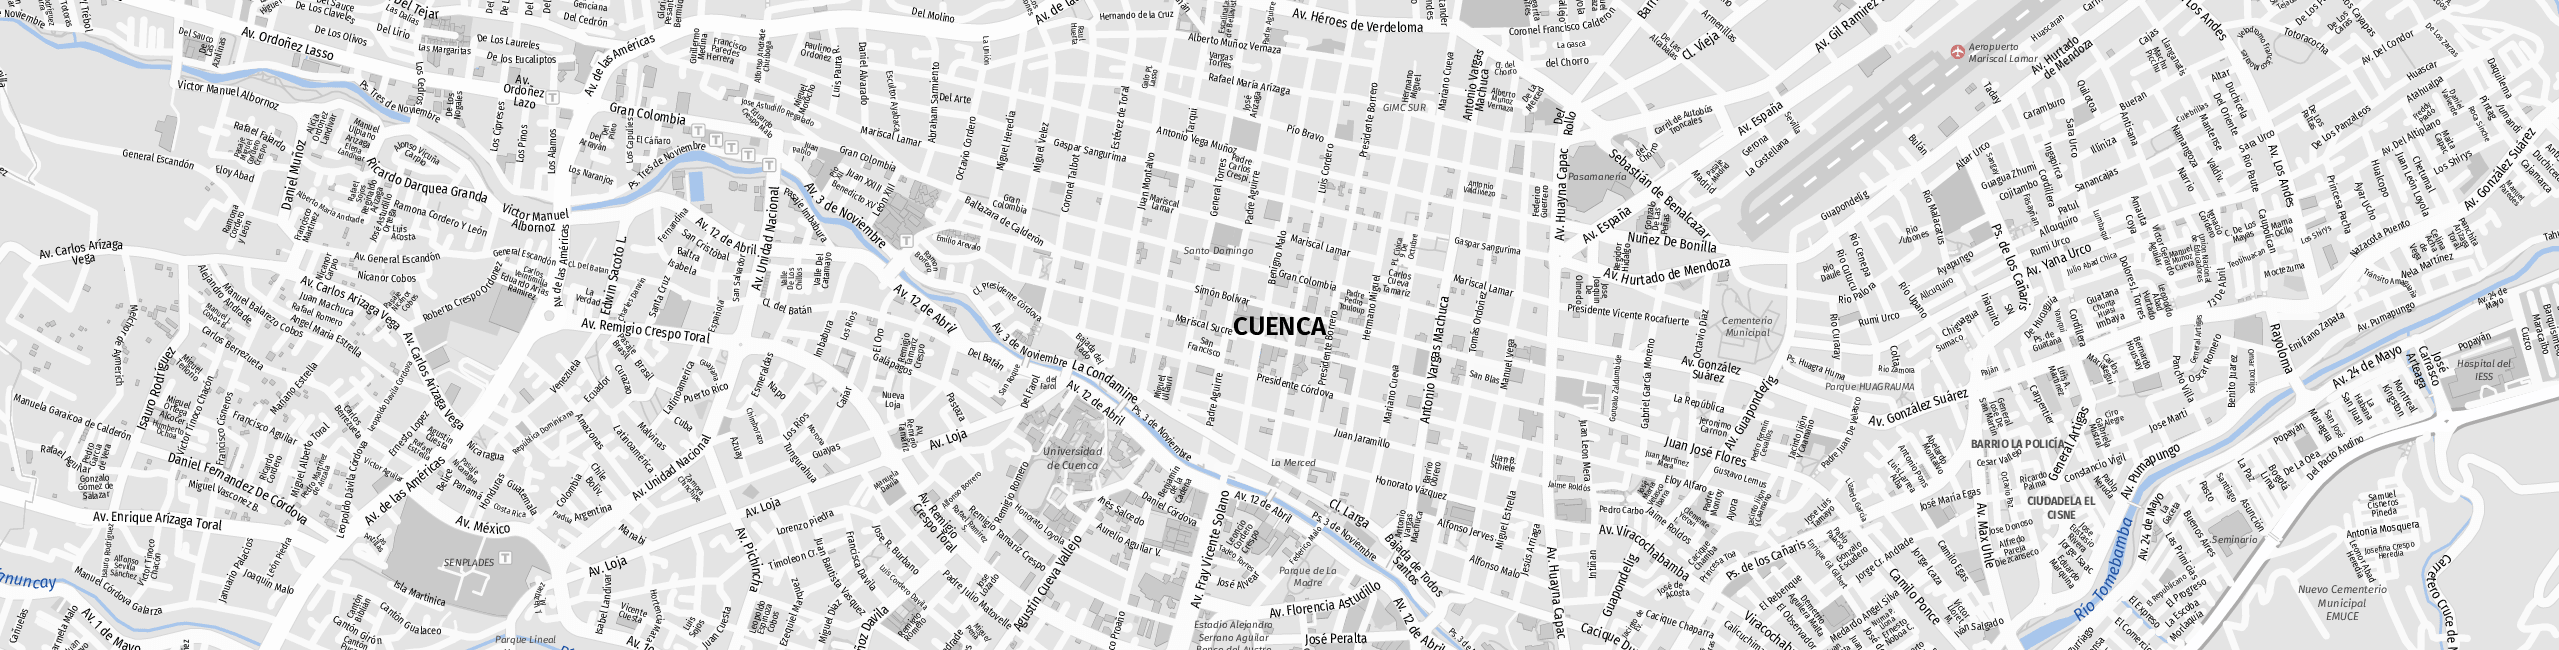 Stadtplan Cuenca zum Downloaden.